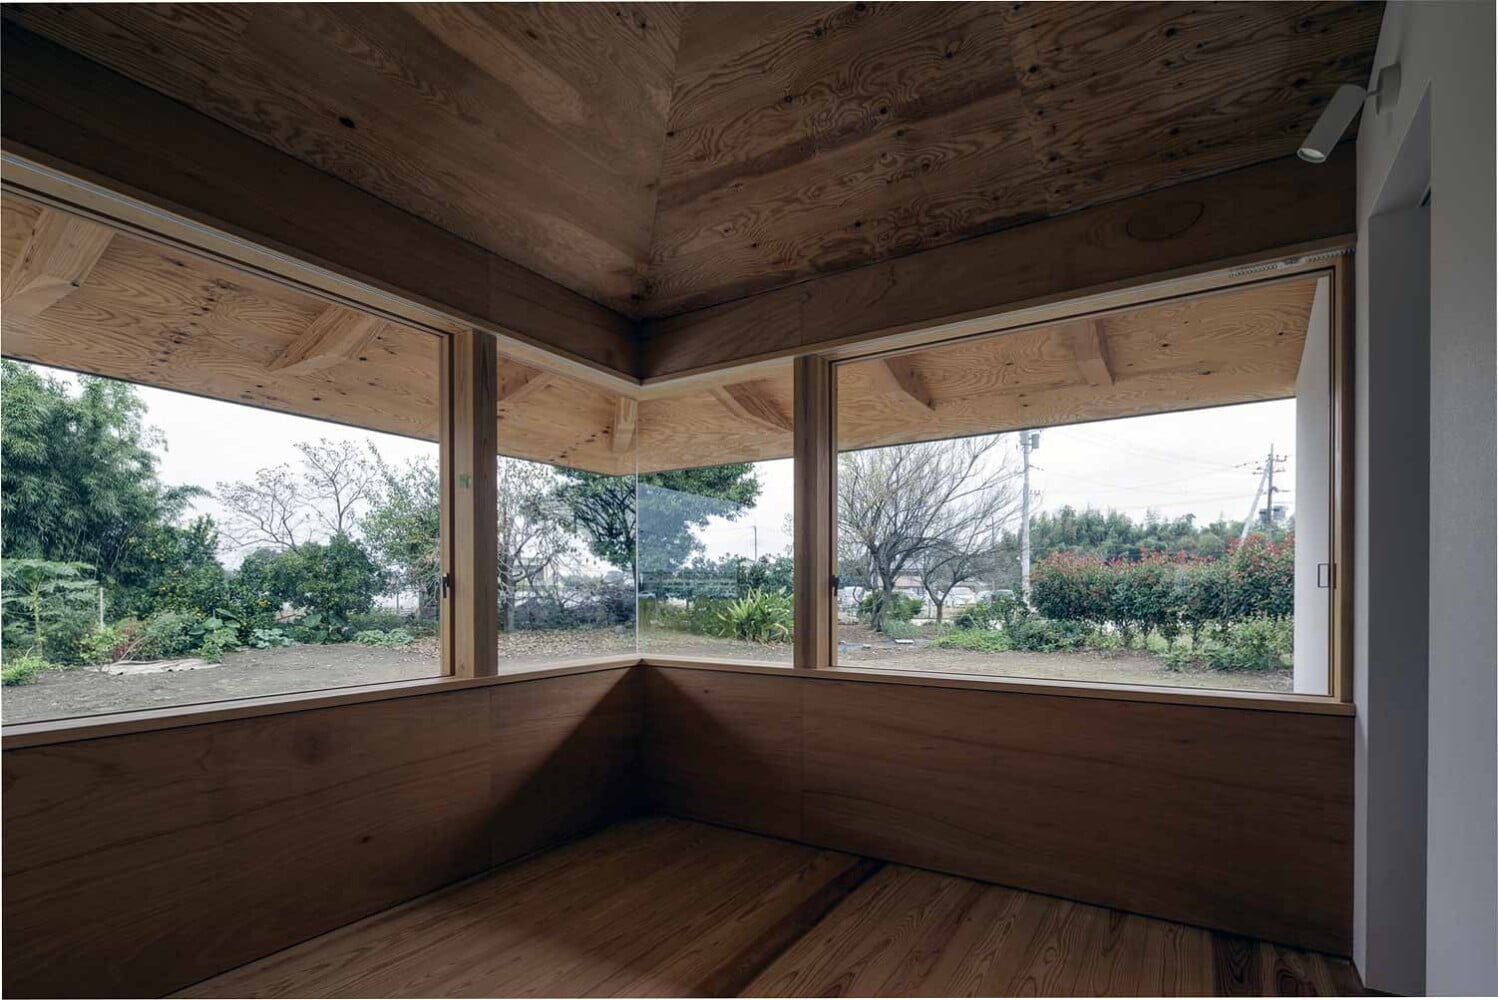 Prostota nowoczesnego domu w stylu japońskim